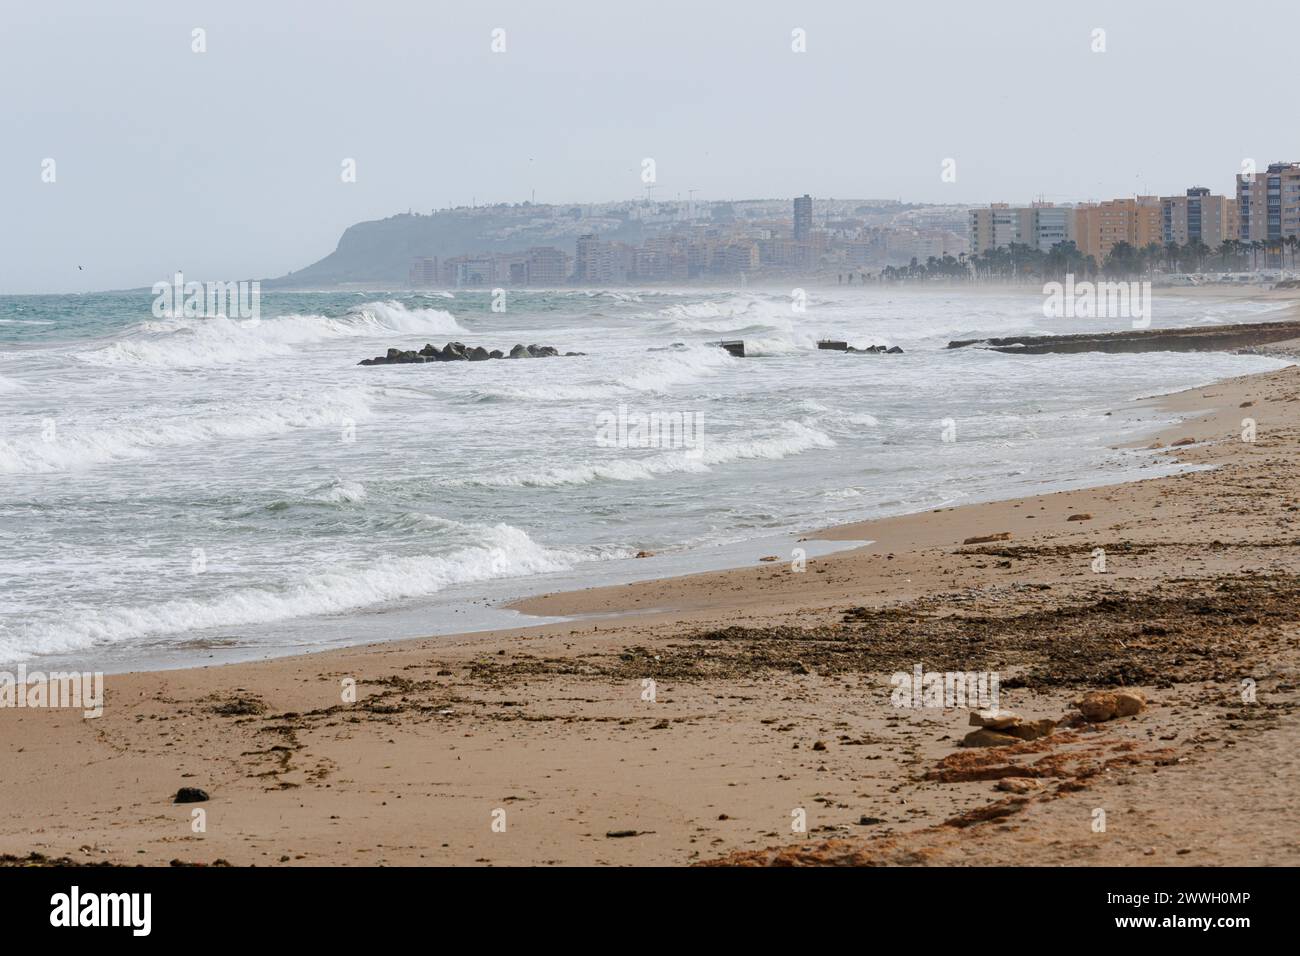 Paisaje marítimo con tormenta este en el Golfo de Alicante, España Foto de stock